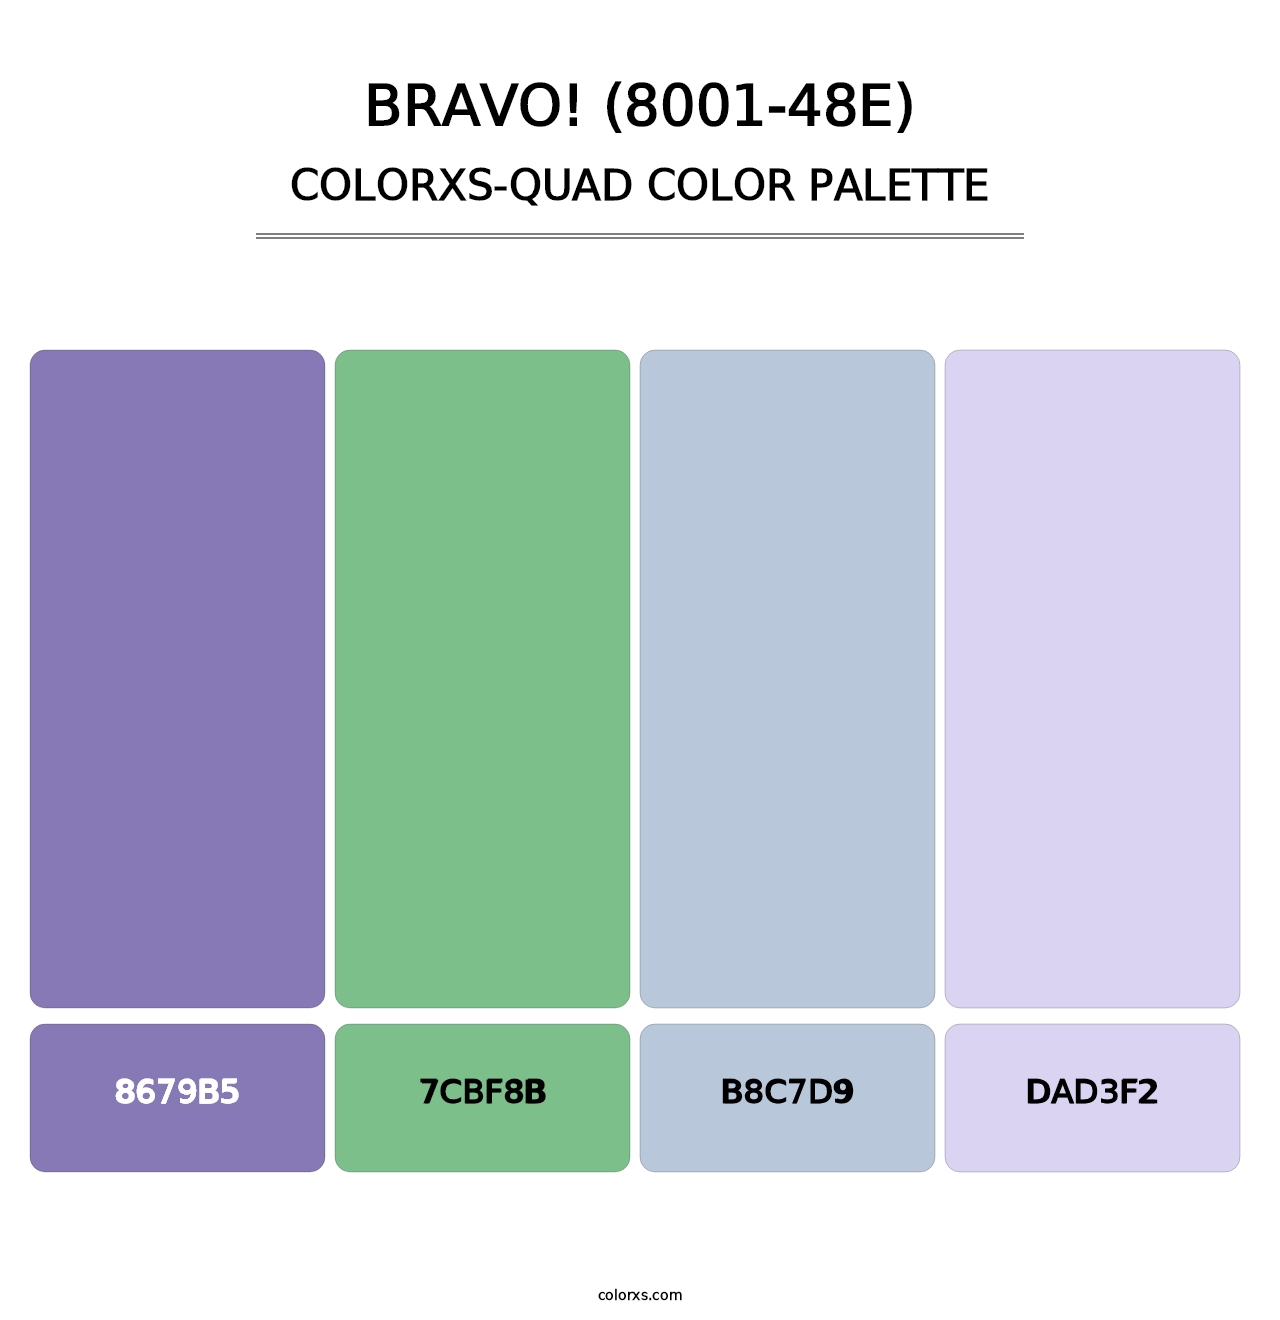 Bravo! (8001-48E) - Colorxs Quad Palette